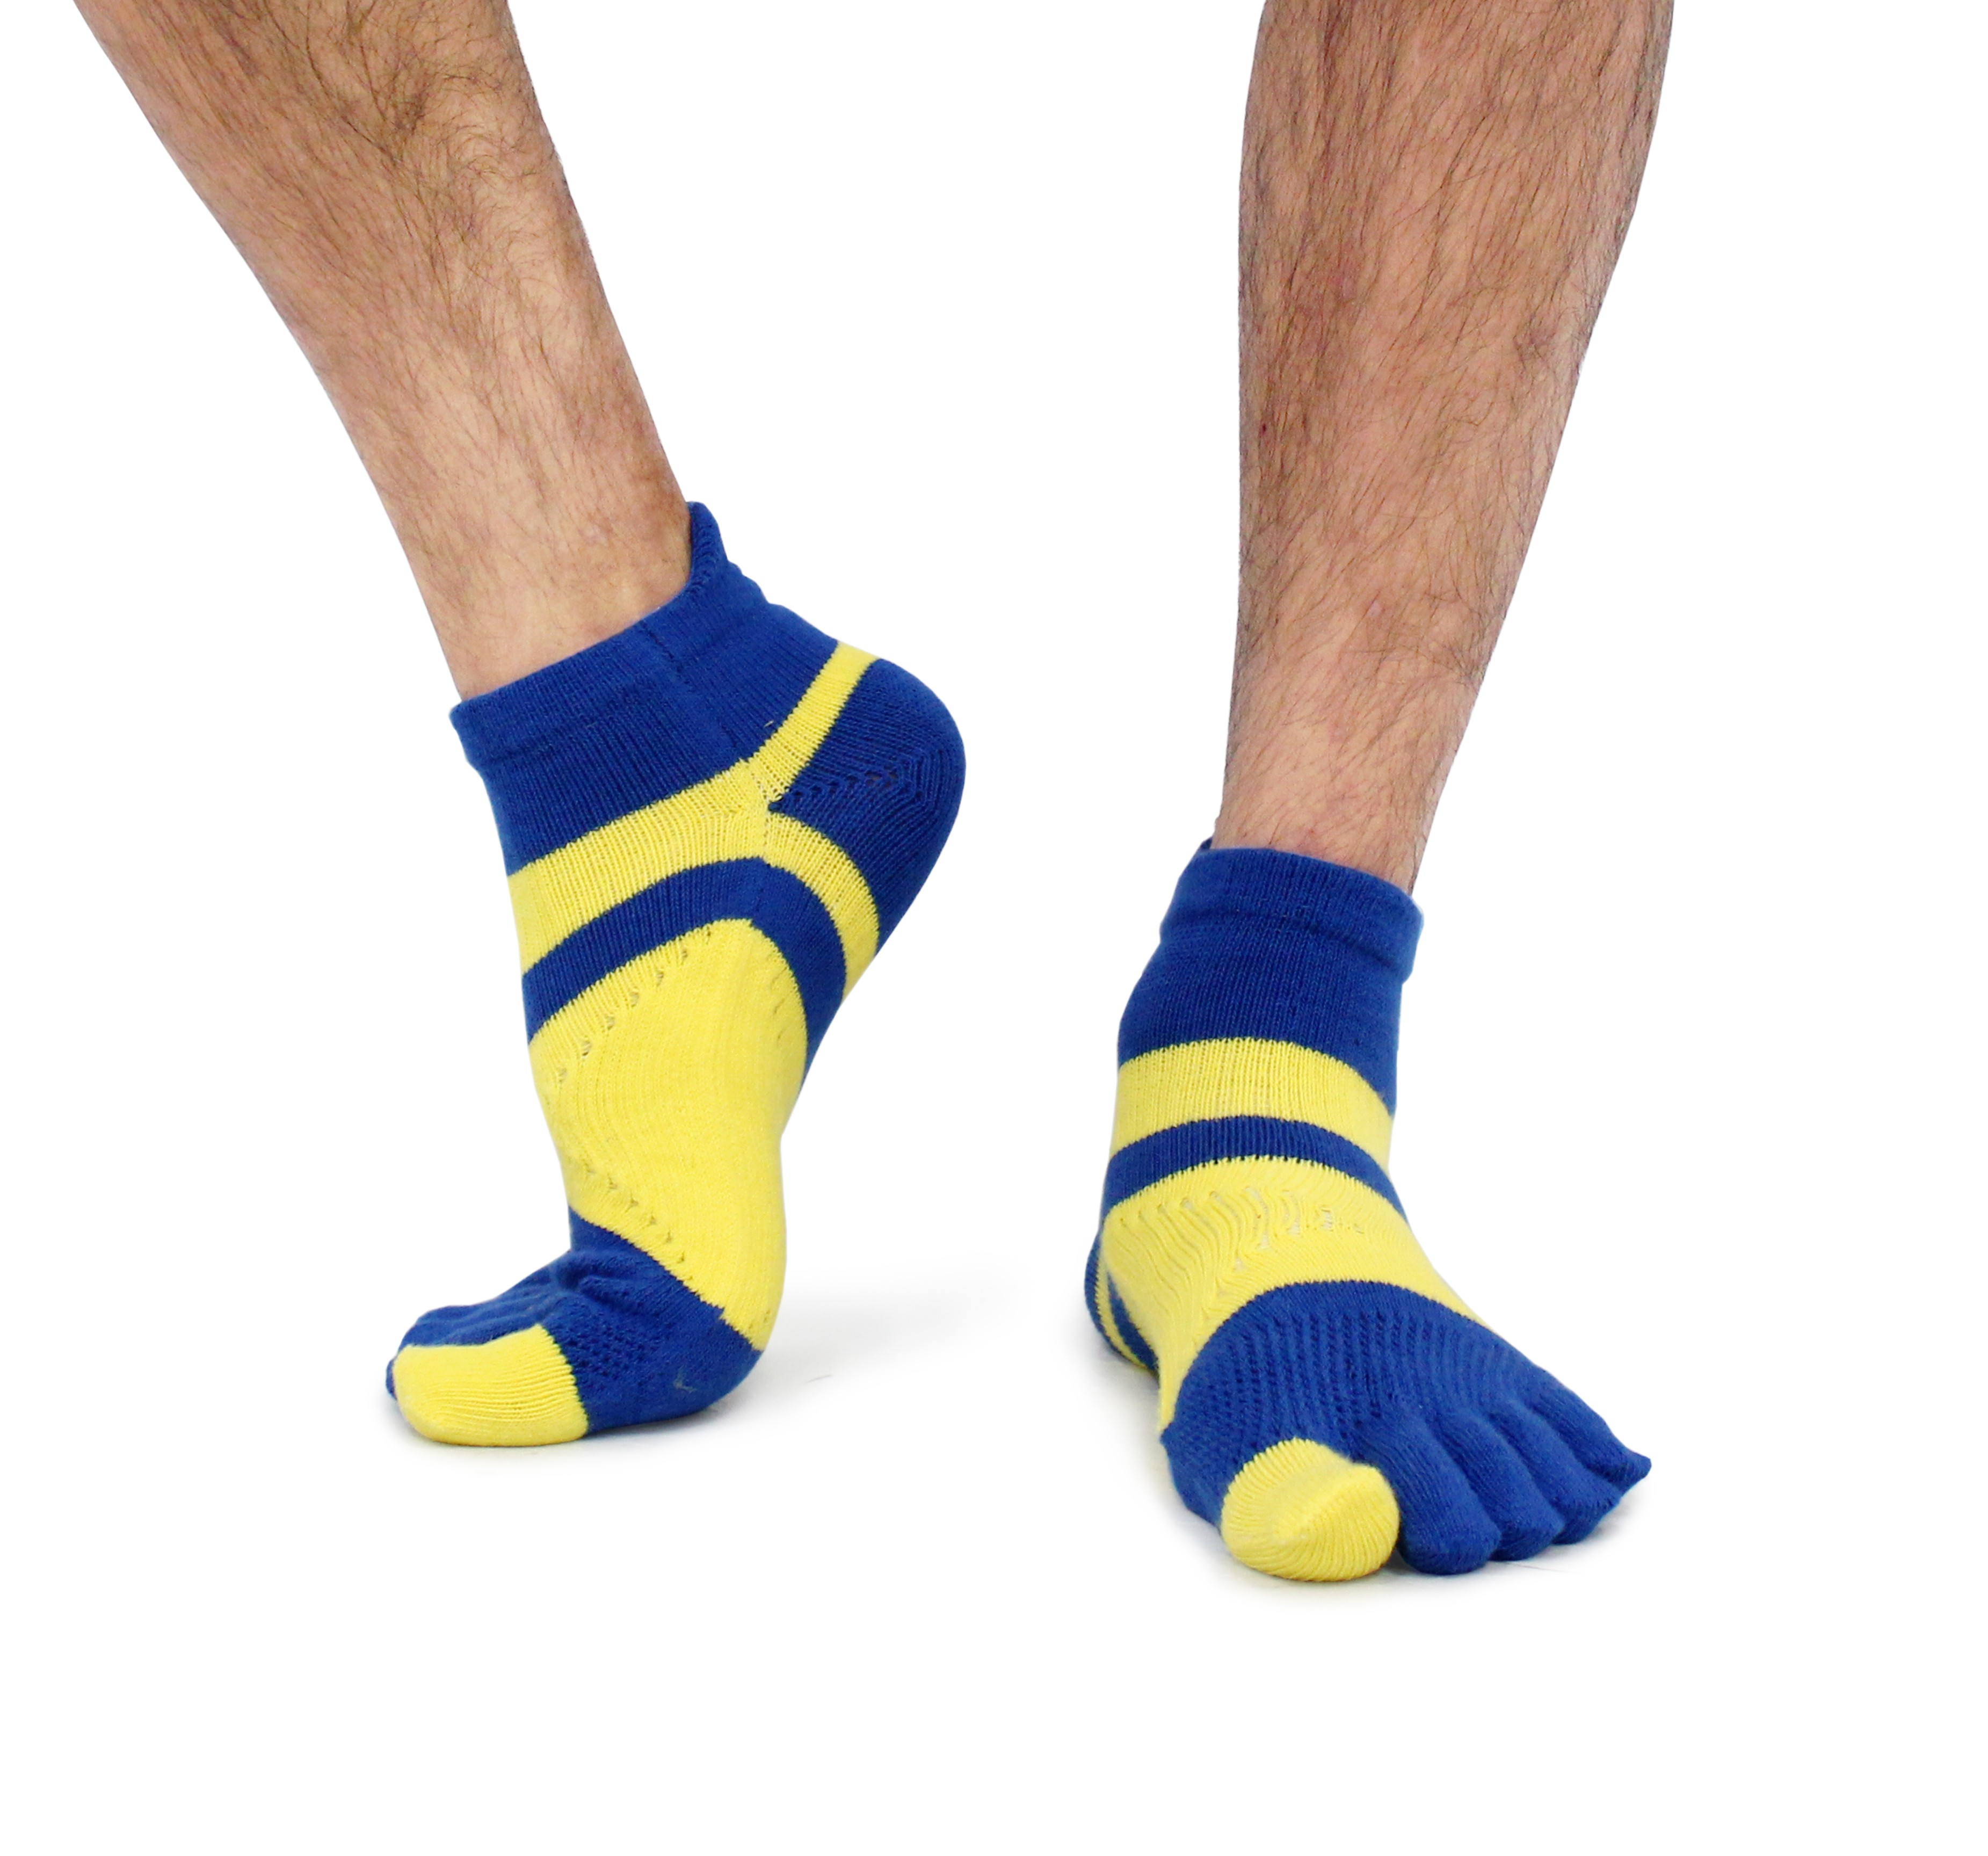 足弓 防臭 保護腳部 五指襪 亮麗彩色 男生尺寸 深藍 Arch, Deodorant, Foot Protection,  Five-finger Socks, Bright Color, Boys' size, Comfortable, Excellent material